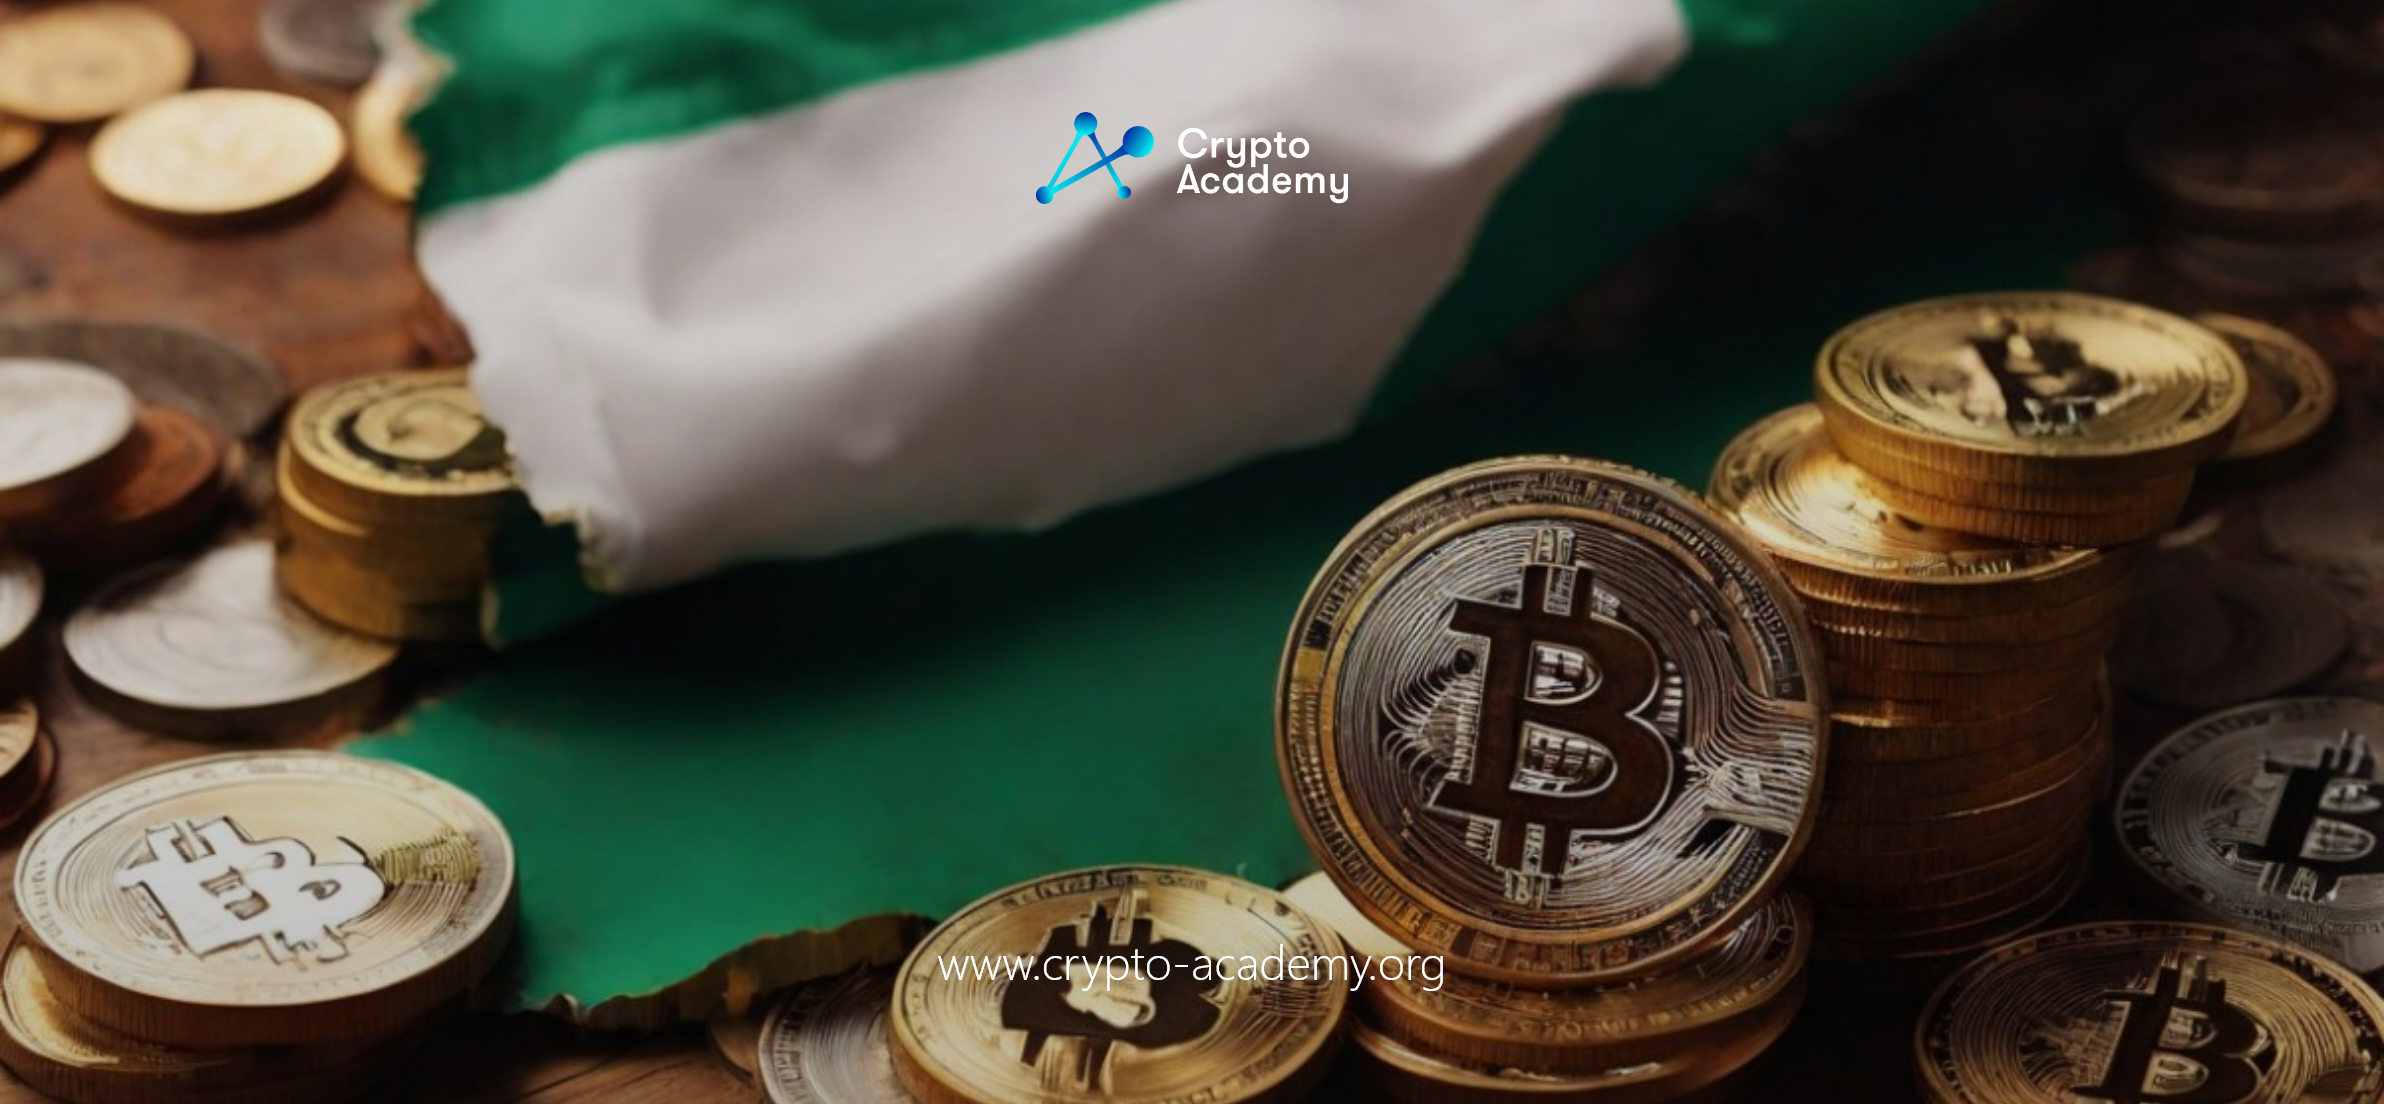 Nigeria Advocates for More Crypto Regulation